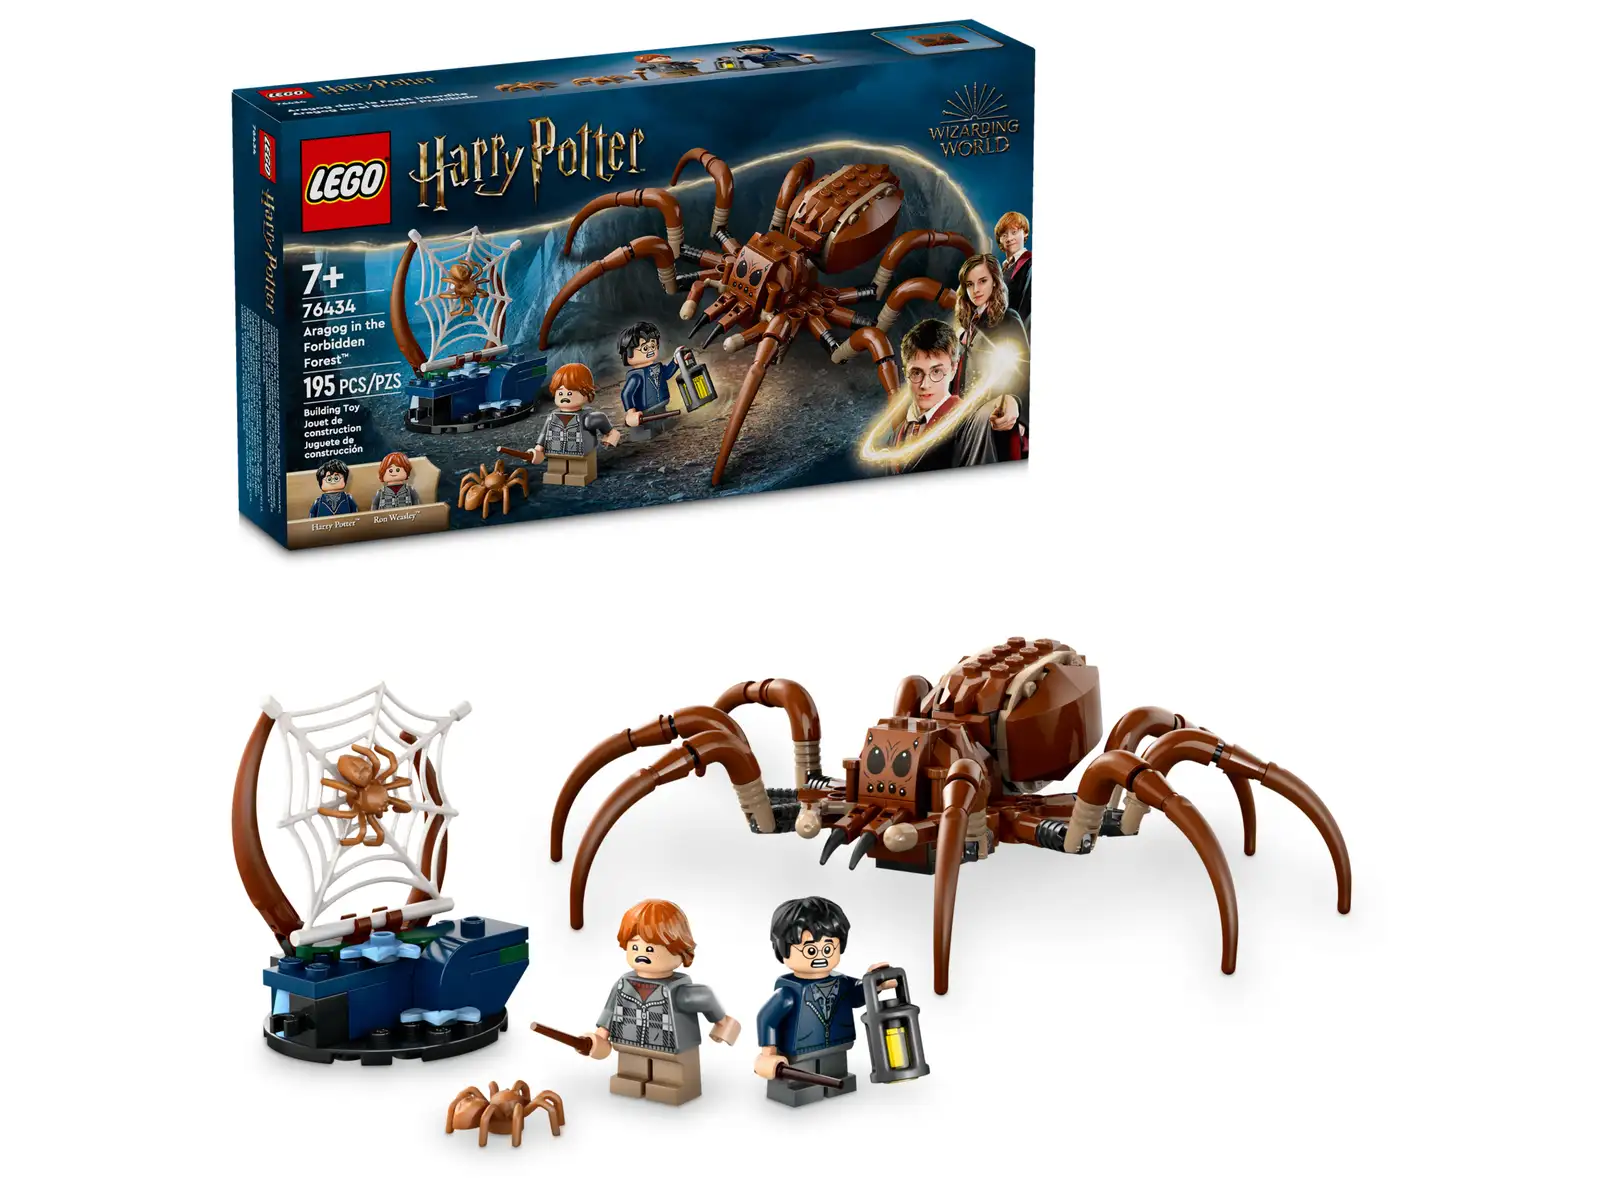 LEGO 76434 Argarapp i Den forbudte skogen 76434 - Lego Harry Potter